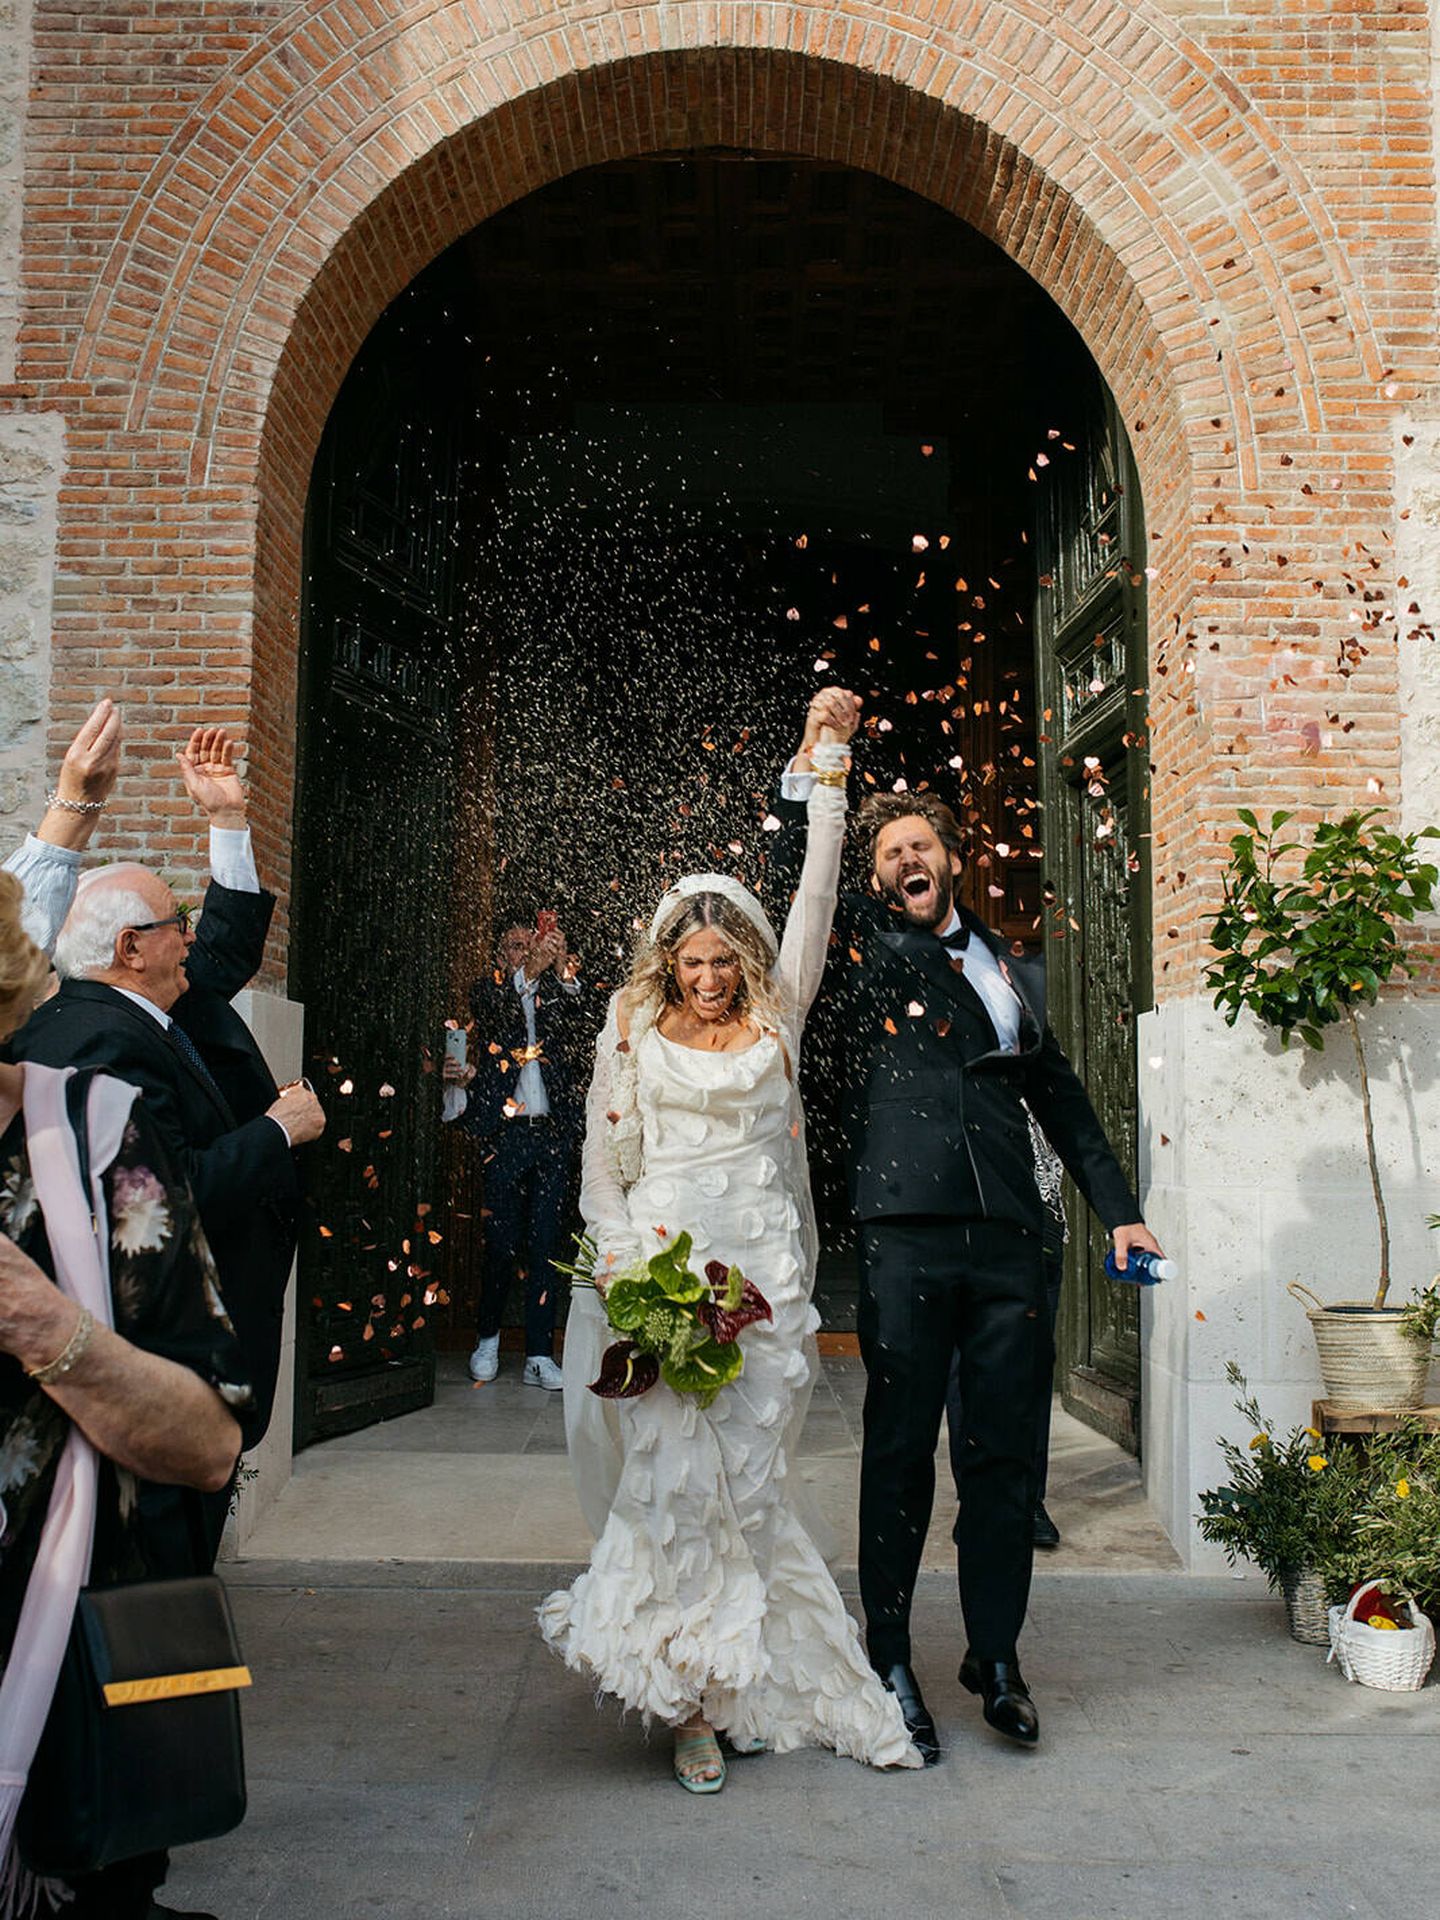 La boda de Adriana y su vestido de novia de Jacquemus. (Alejandra Ortiz Photo)